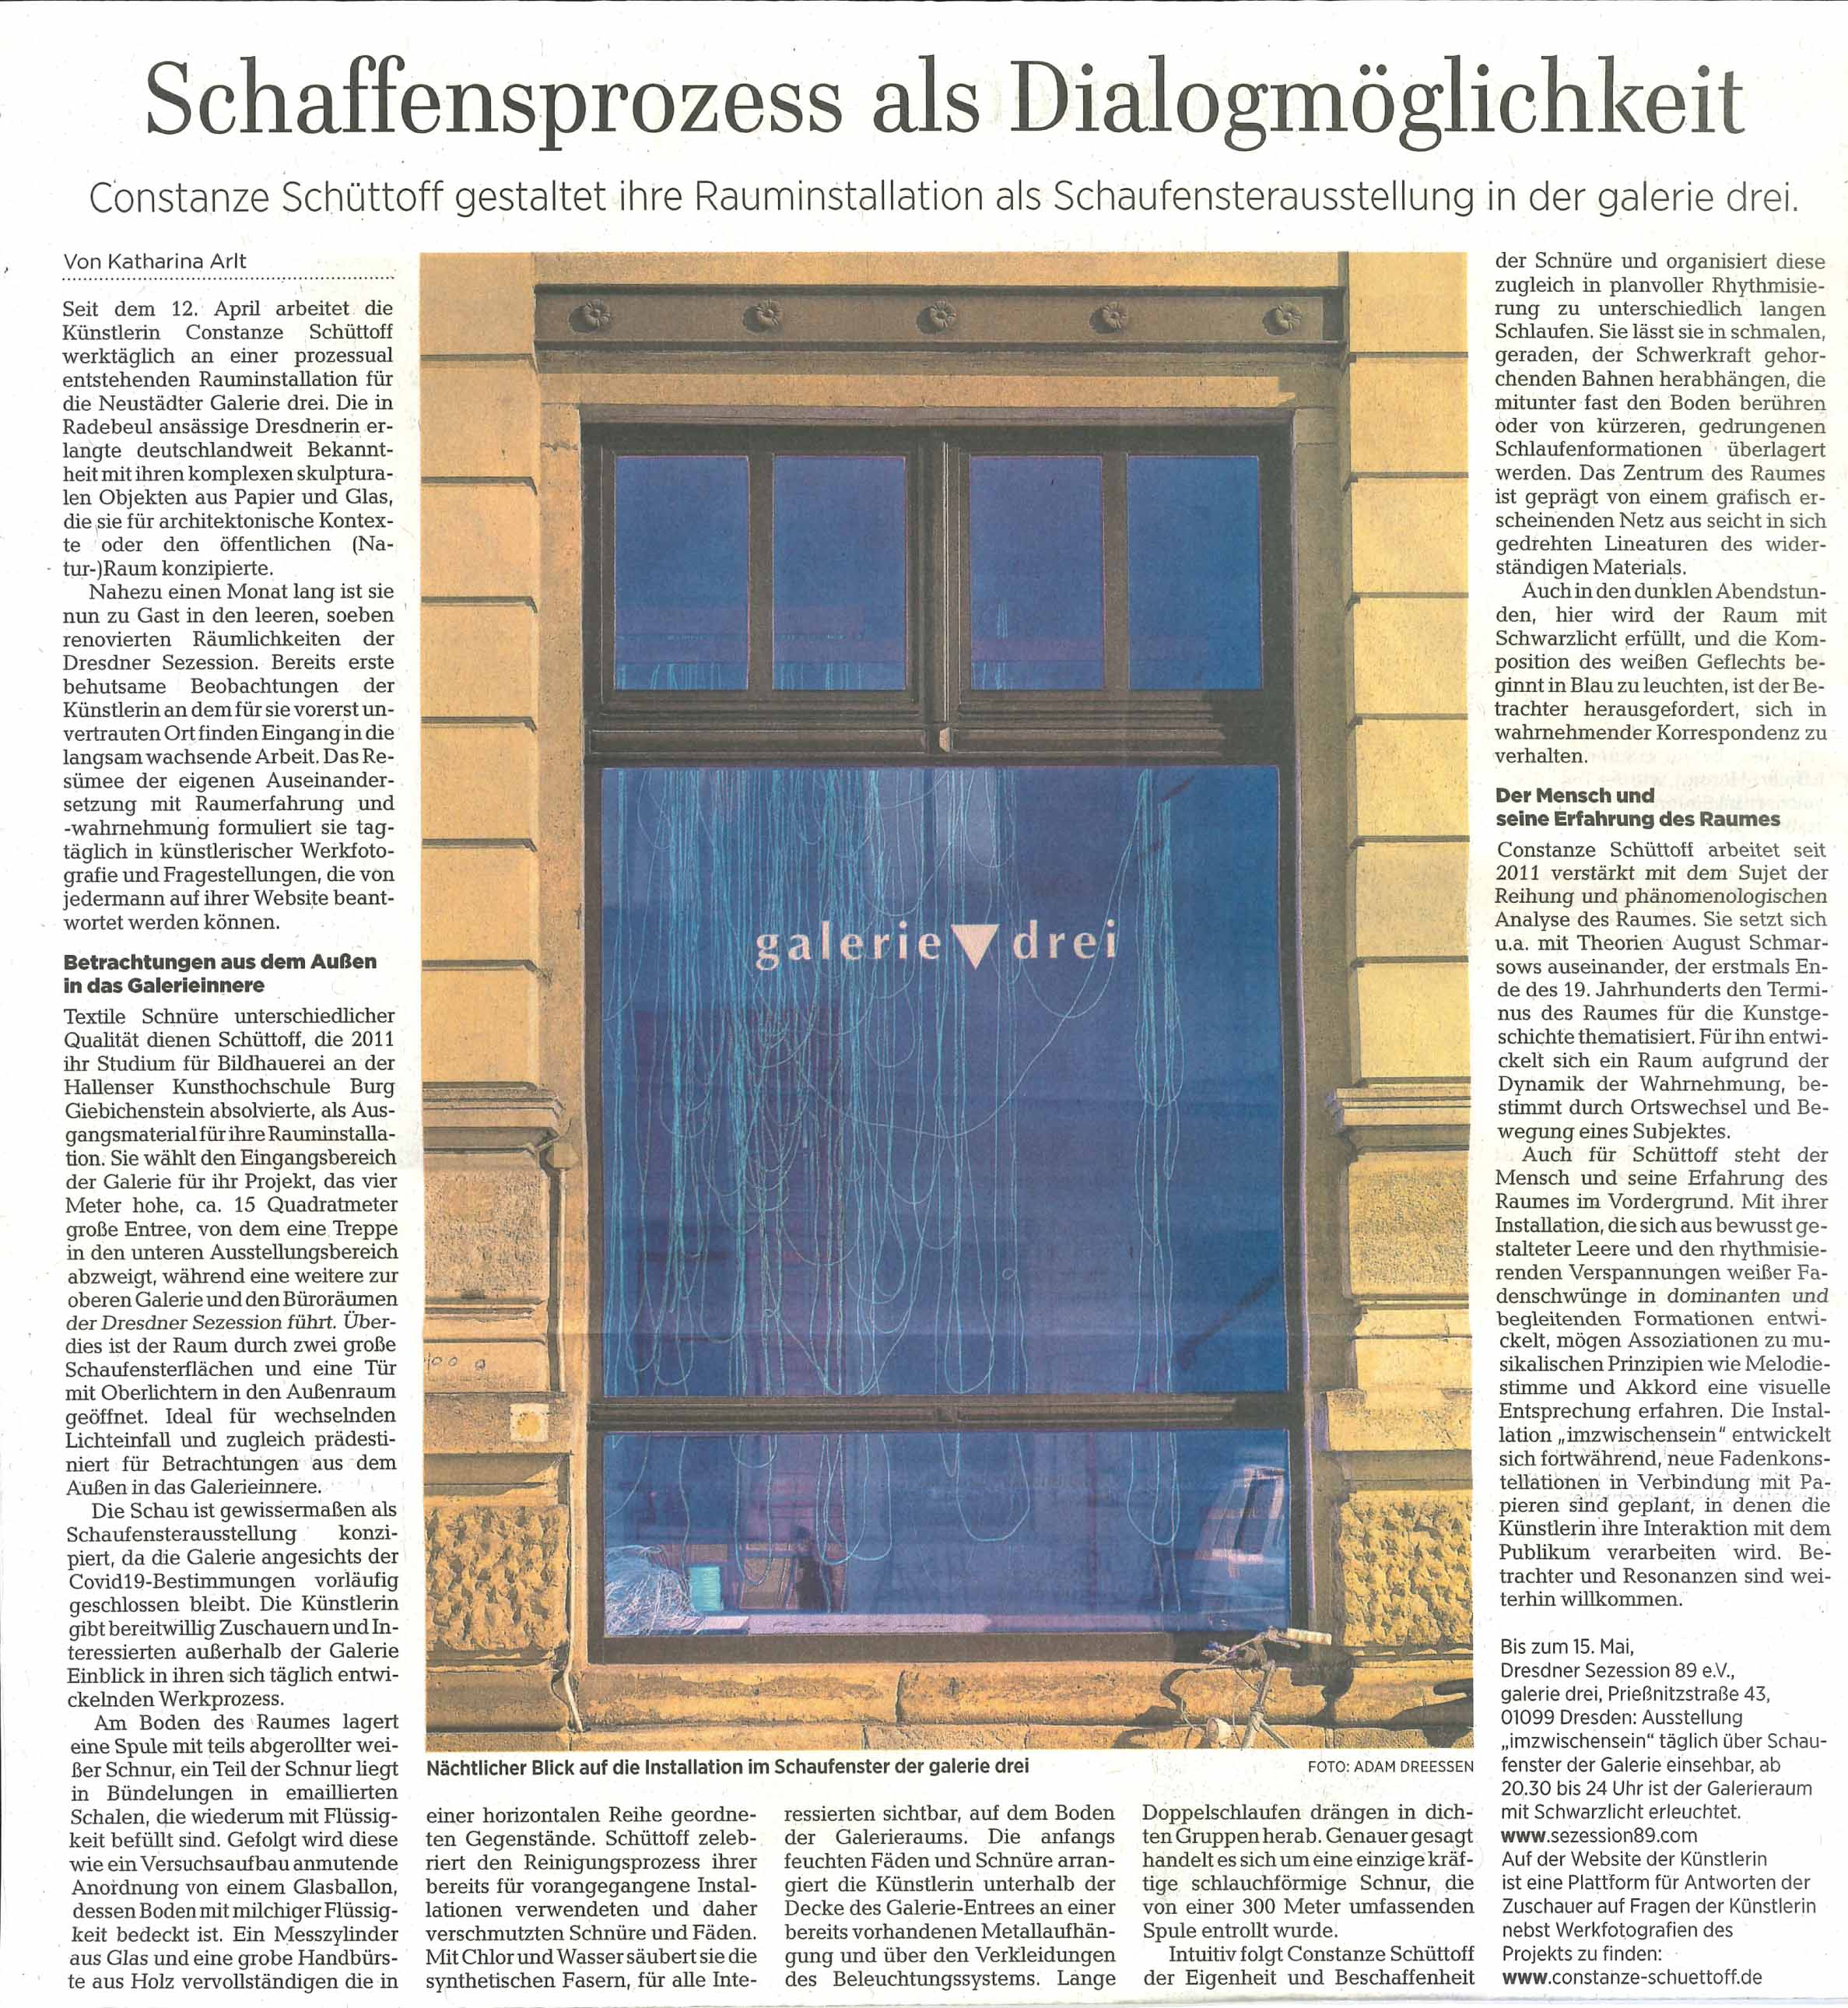 Dresdner Neueste Nachrichten, 06.05.2021, Constanze Schüttoff